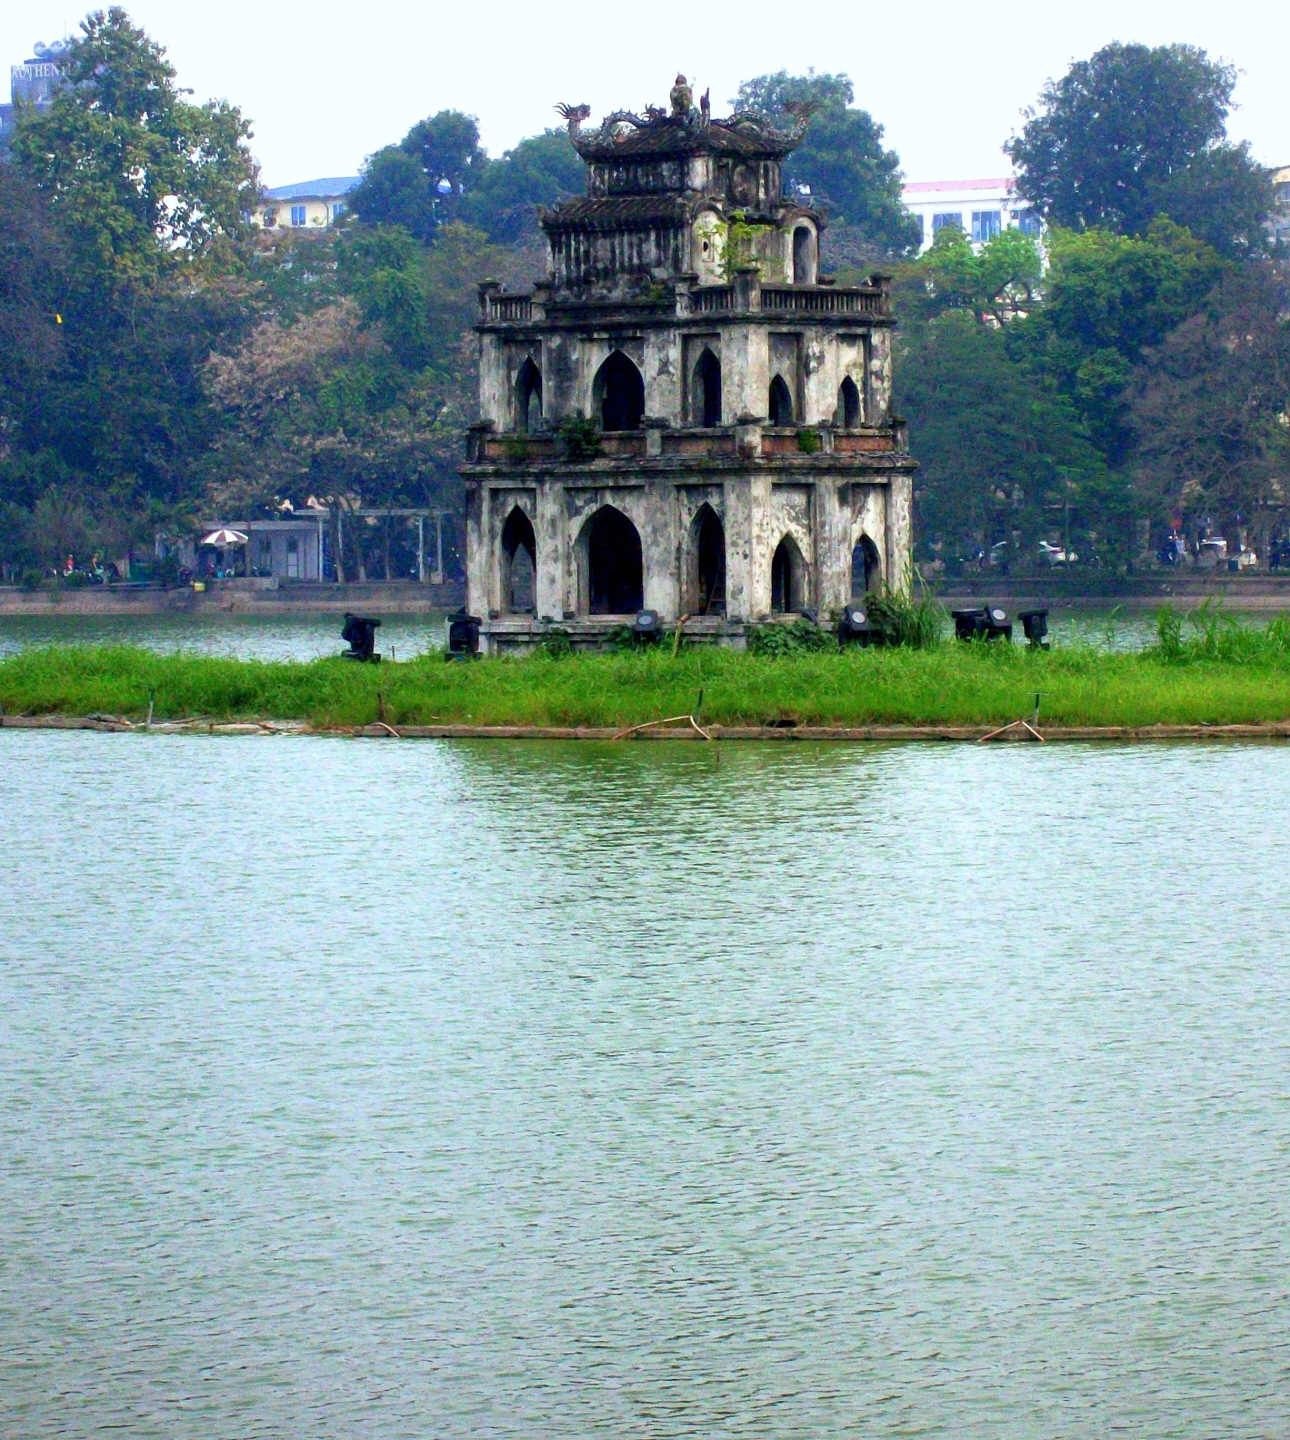 Hoe Nhai Pagoda   Hoan Kiem Lake in Hanoi, Viet Nam - Hanoi, Viet Nam